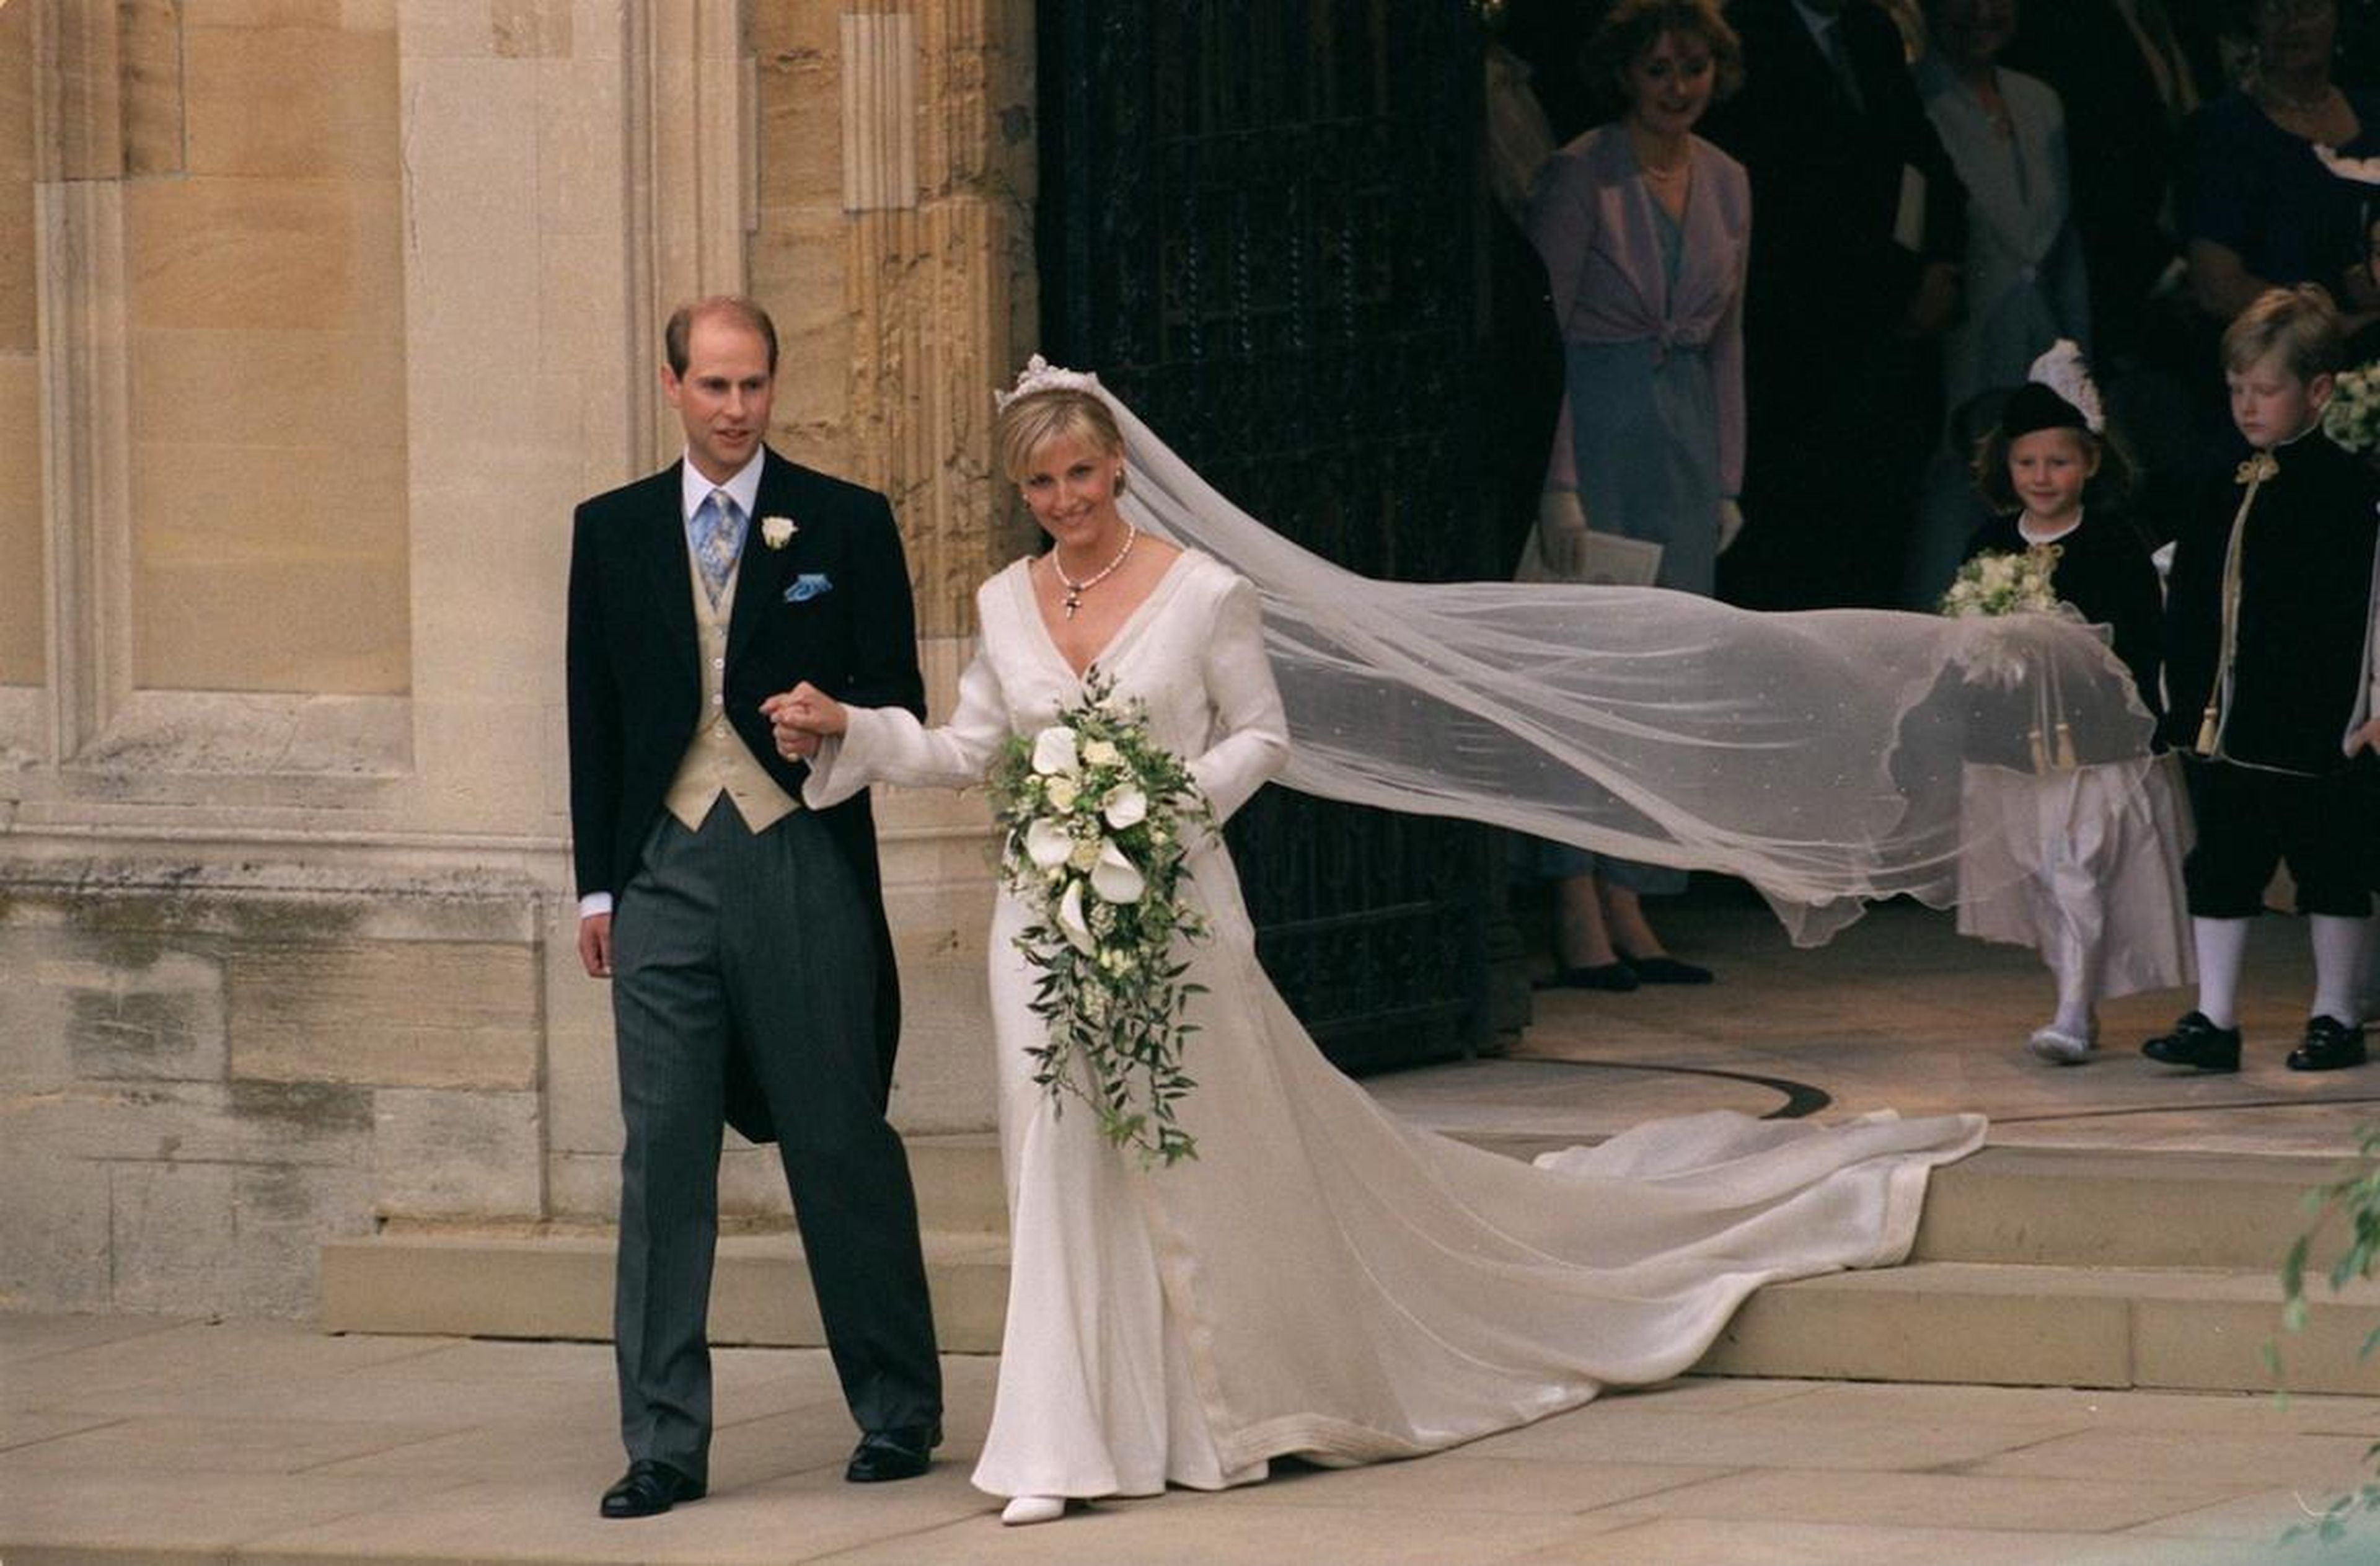 El hijo menor de la reina, el príncipe Eduardo, se casó con Sophie Helen-Rhys Jones en el verano de 1999. Sophie se convirtió oficialmente en la condesa de Wessex al casarse.